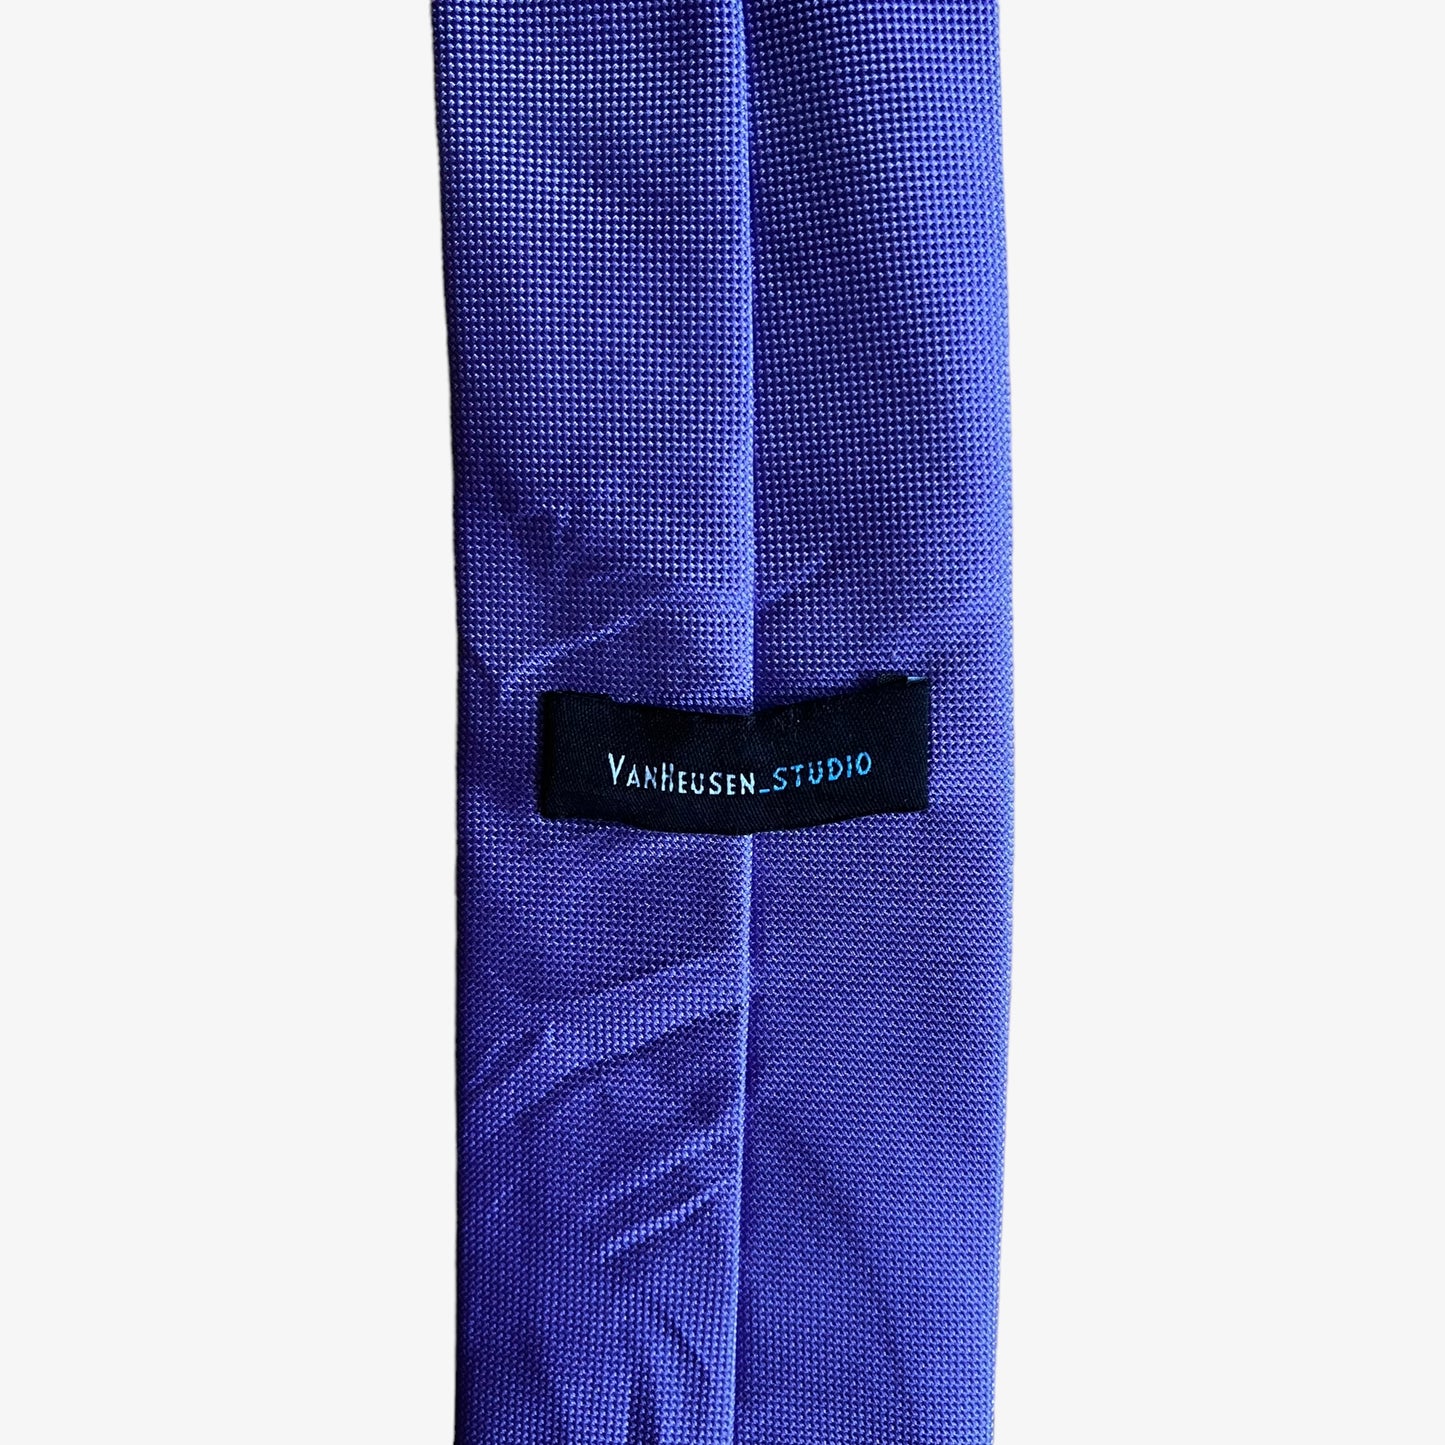 Vintage 90s Van Heusen Studio Purple Polyester Tie Label - Casspios Dream